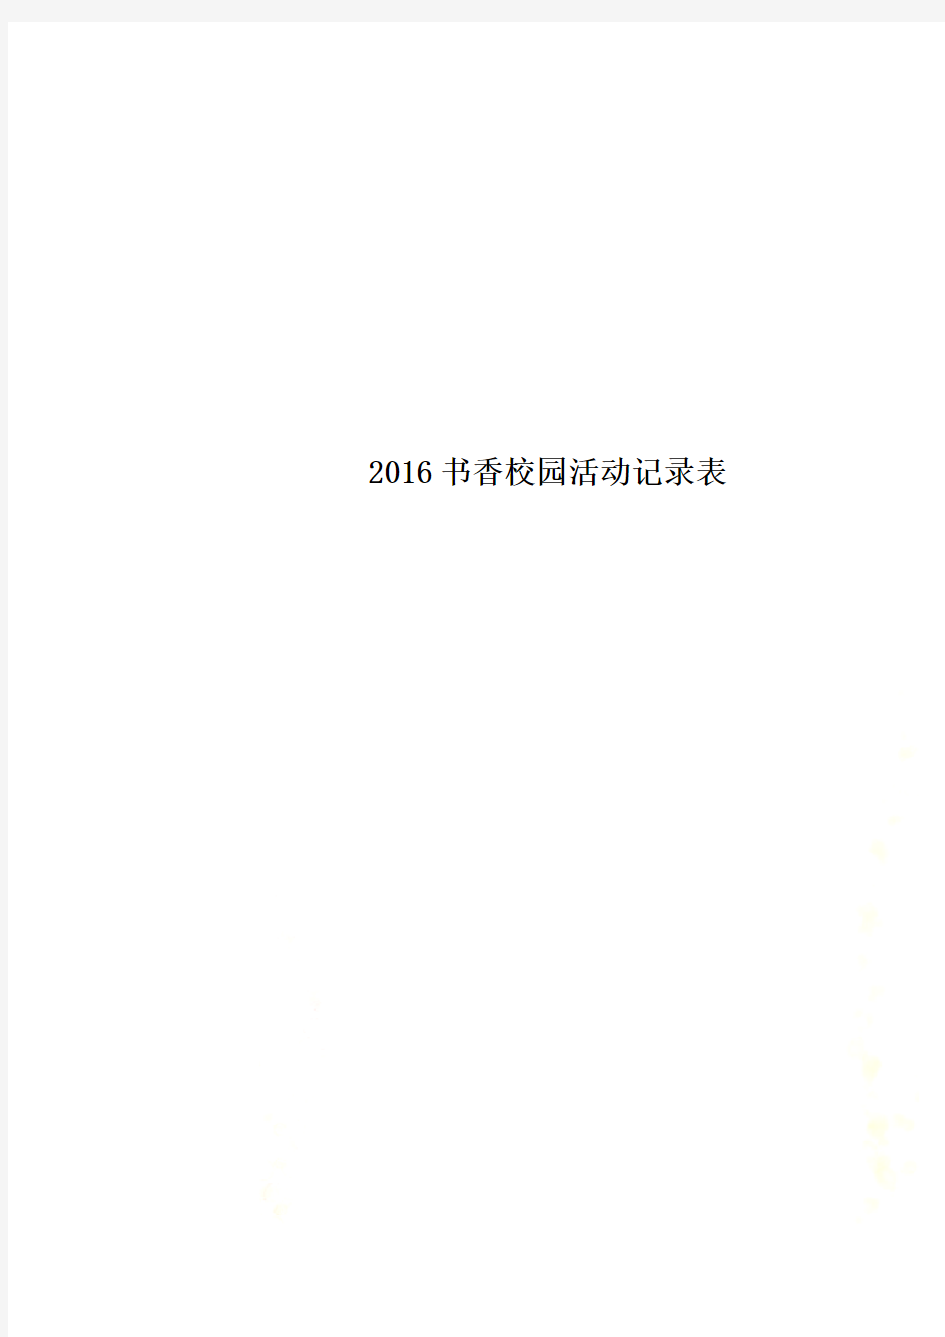 2016书香校园活动记录表